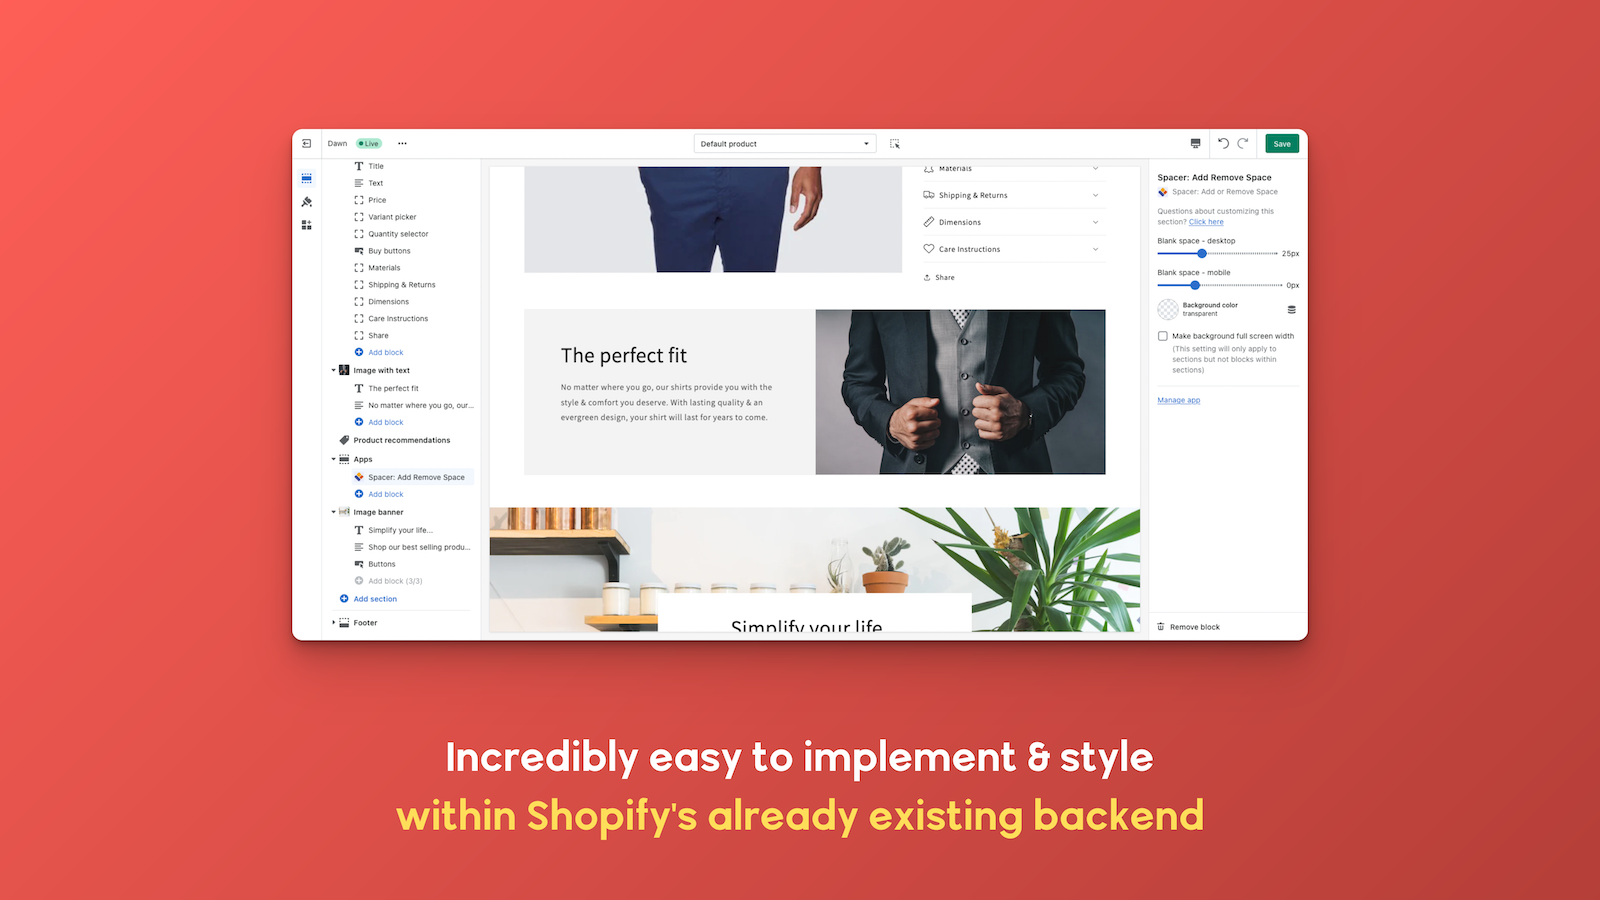 Ongelooflijk eenvoudig te implementeren en te stylen binnen Shopify's backend